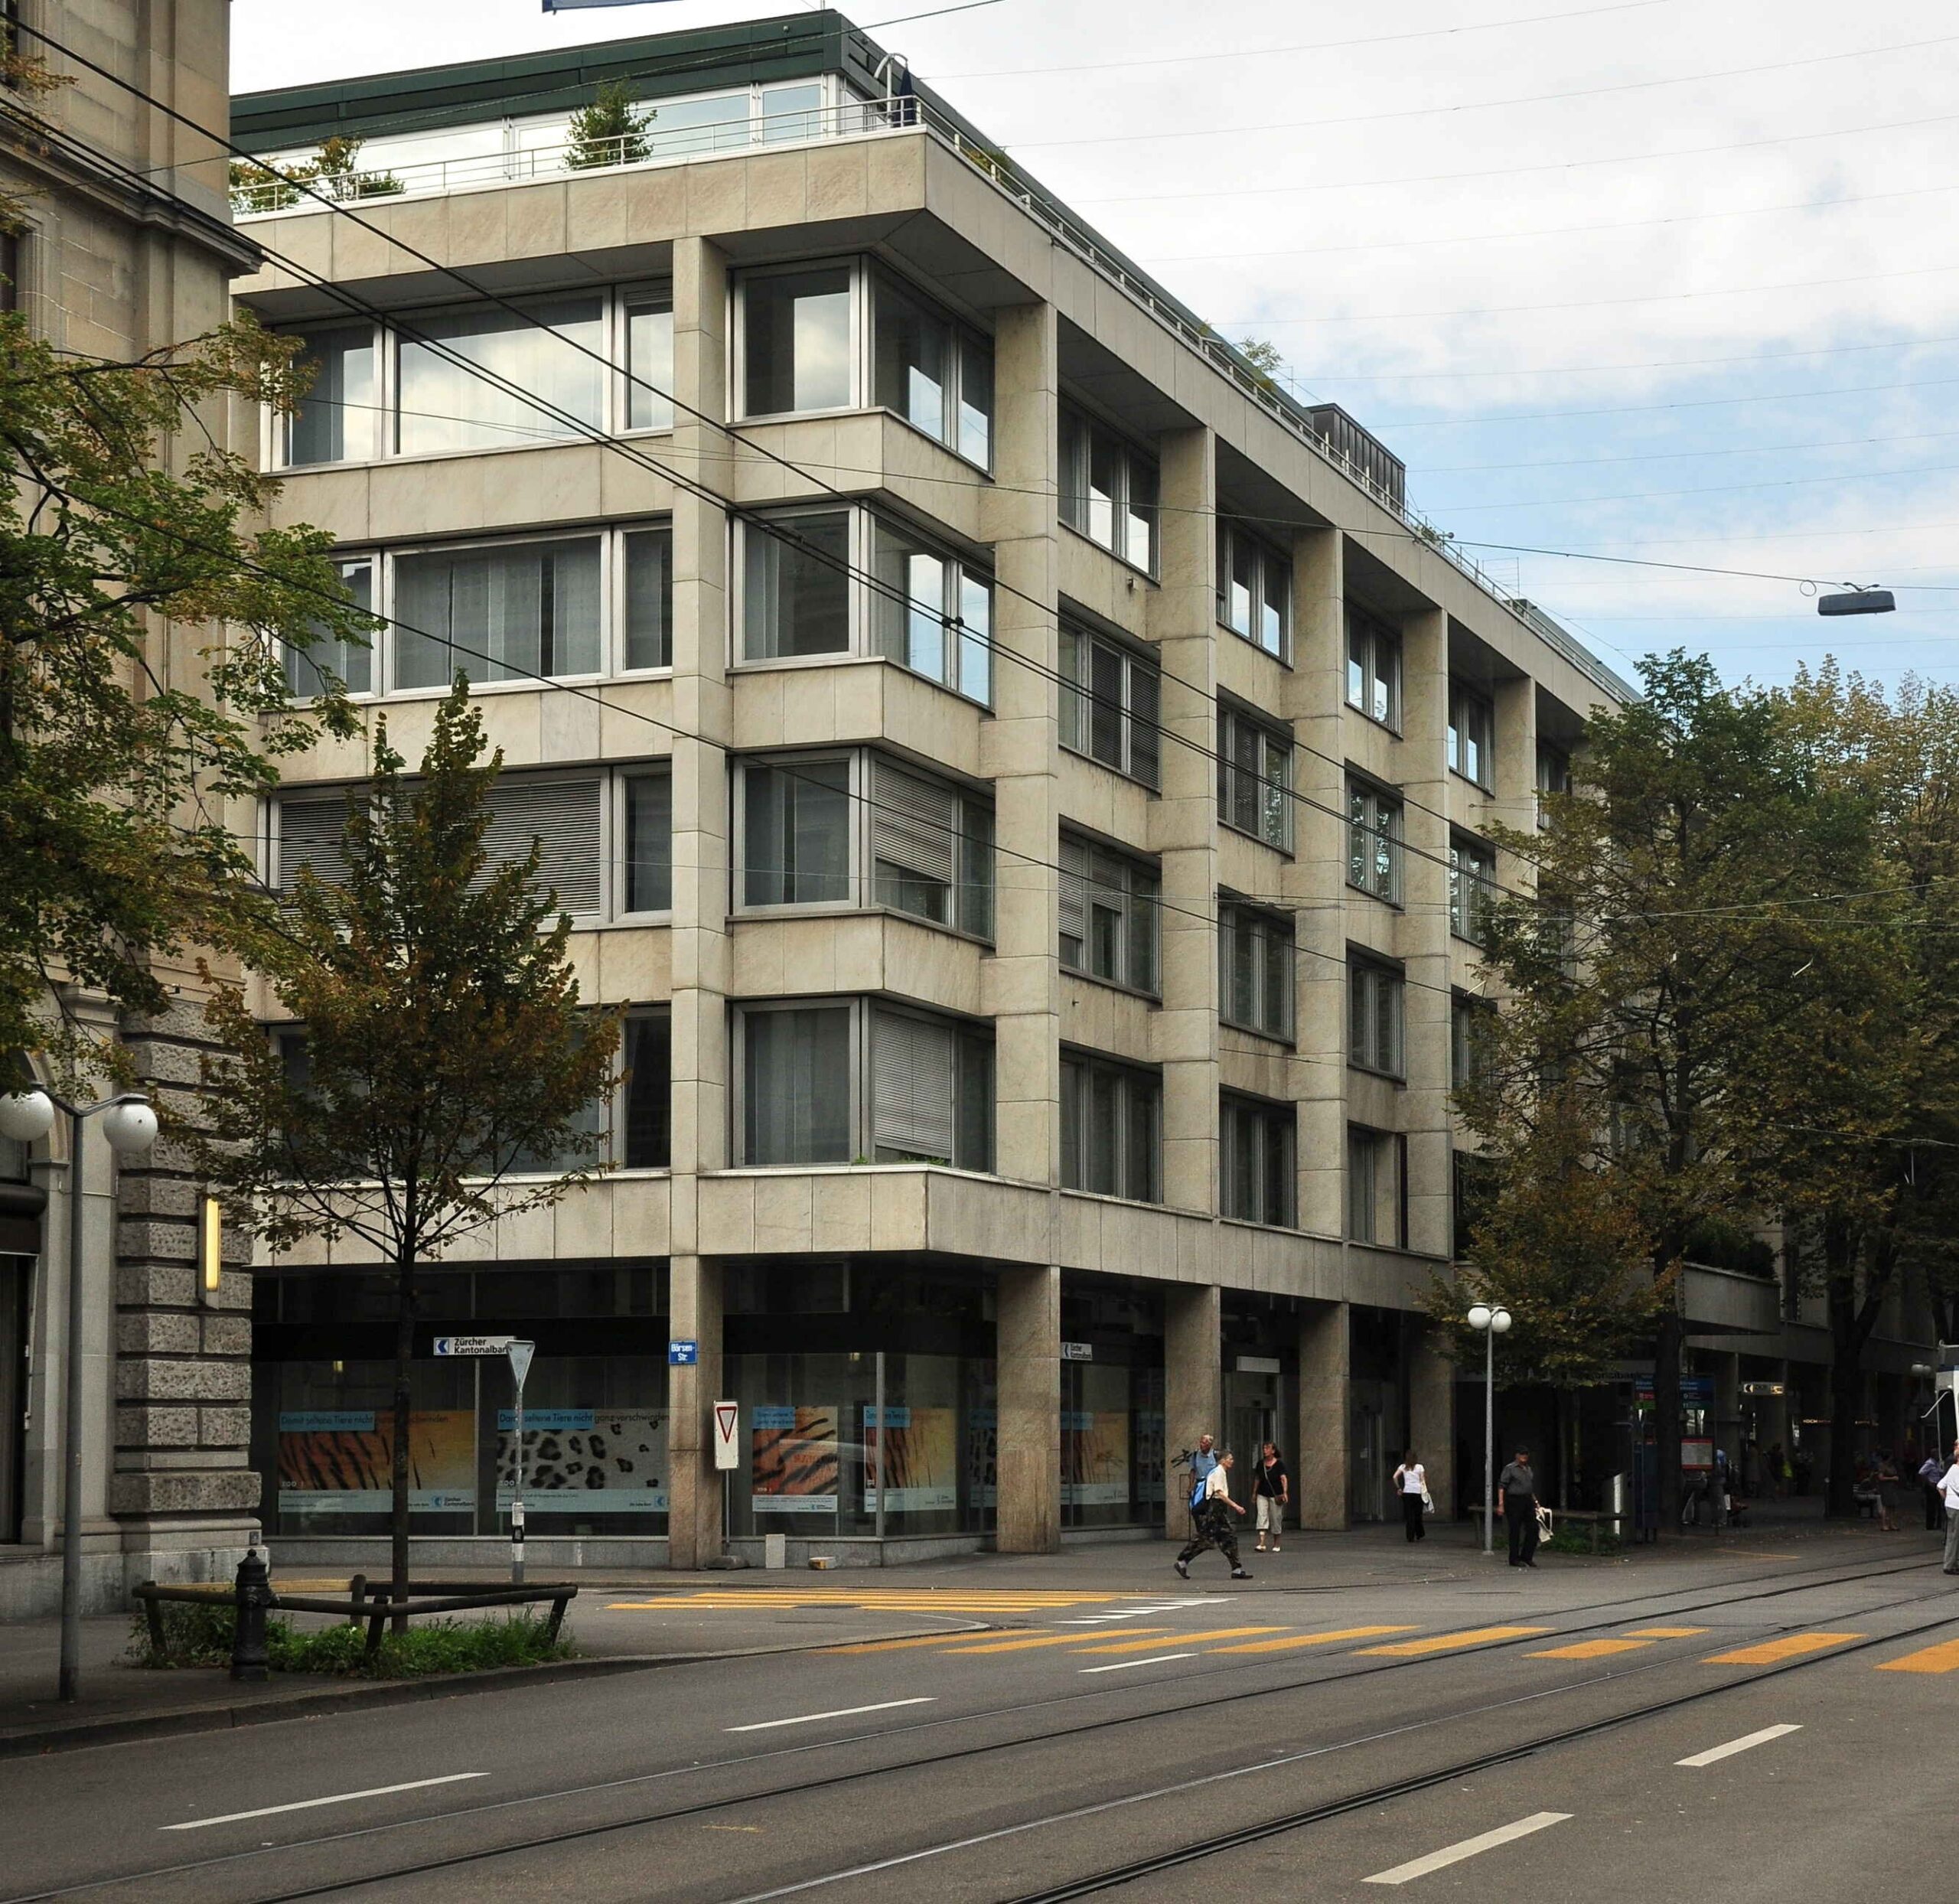 Blockchain: La Banca Cantonale di Zurigo o Zürcher Kantonalbank è la più grande banca cantonale e la quarta più grande banca della Svizzera, nonché il principale fornitore di servizi finanziari nell'area della Grande Zurigo, con un patrimonio totale di oltre CHF 150 miliardi